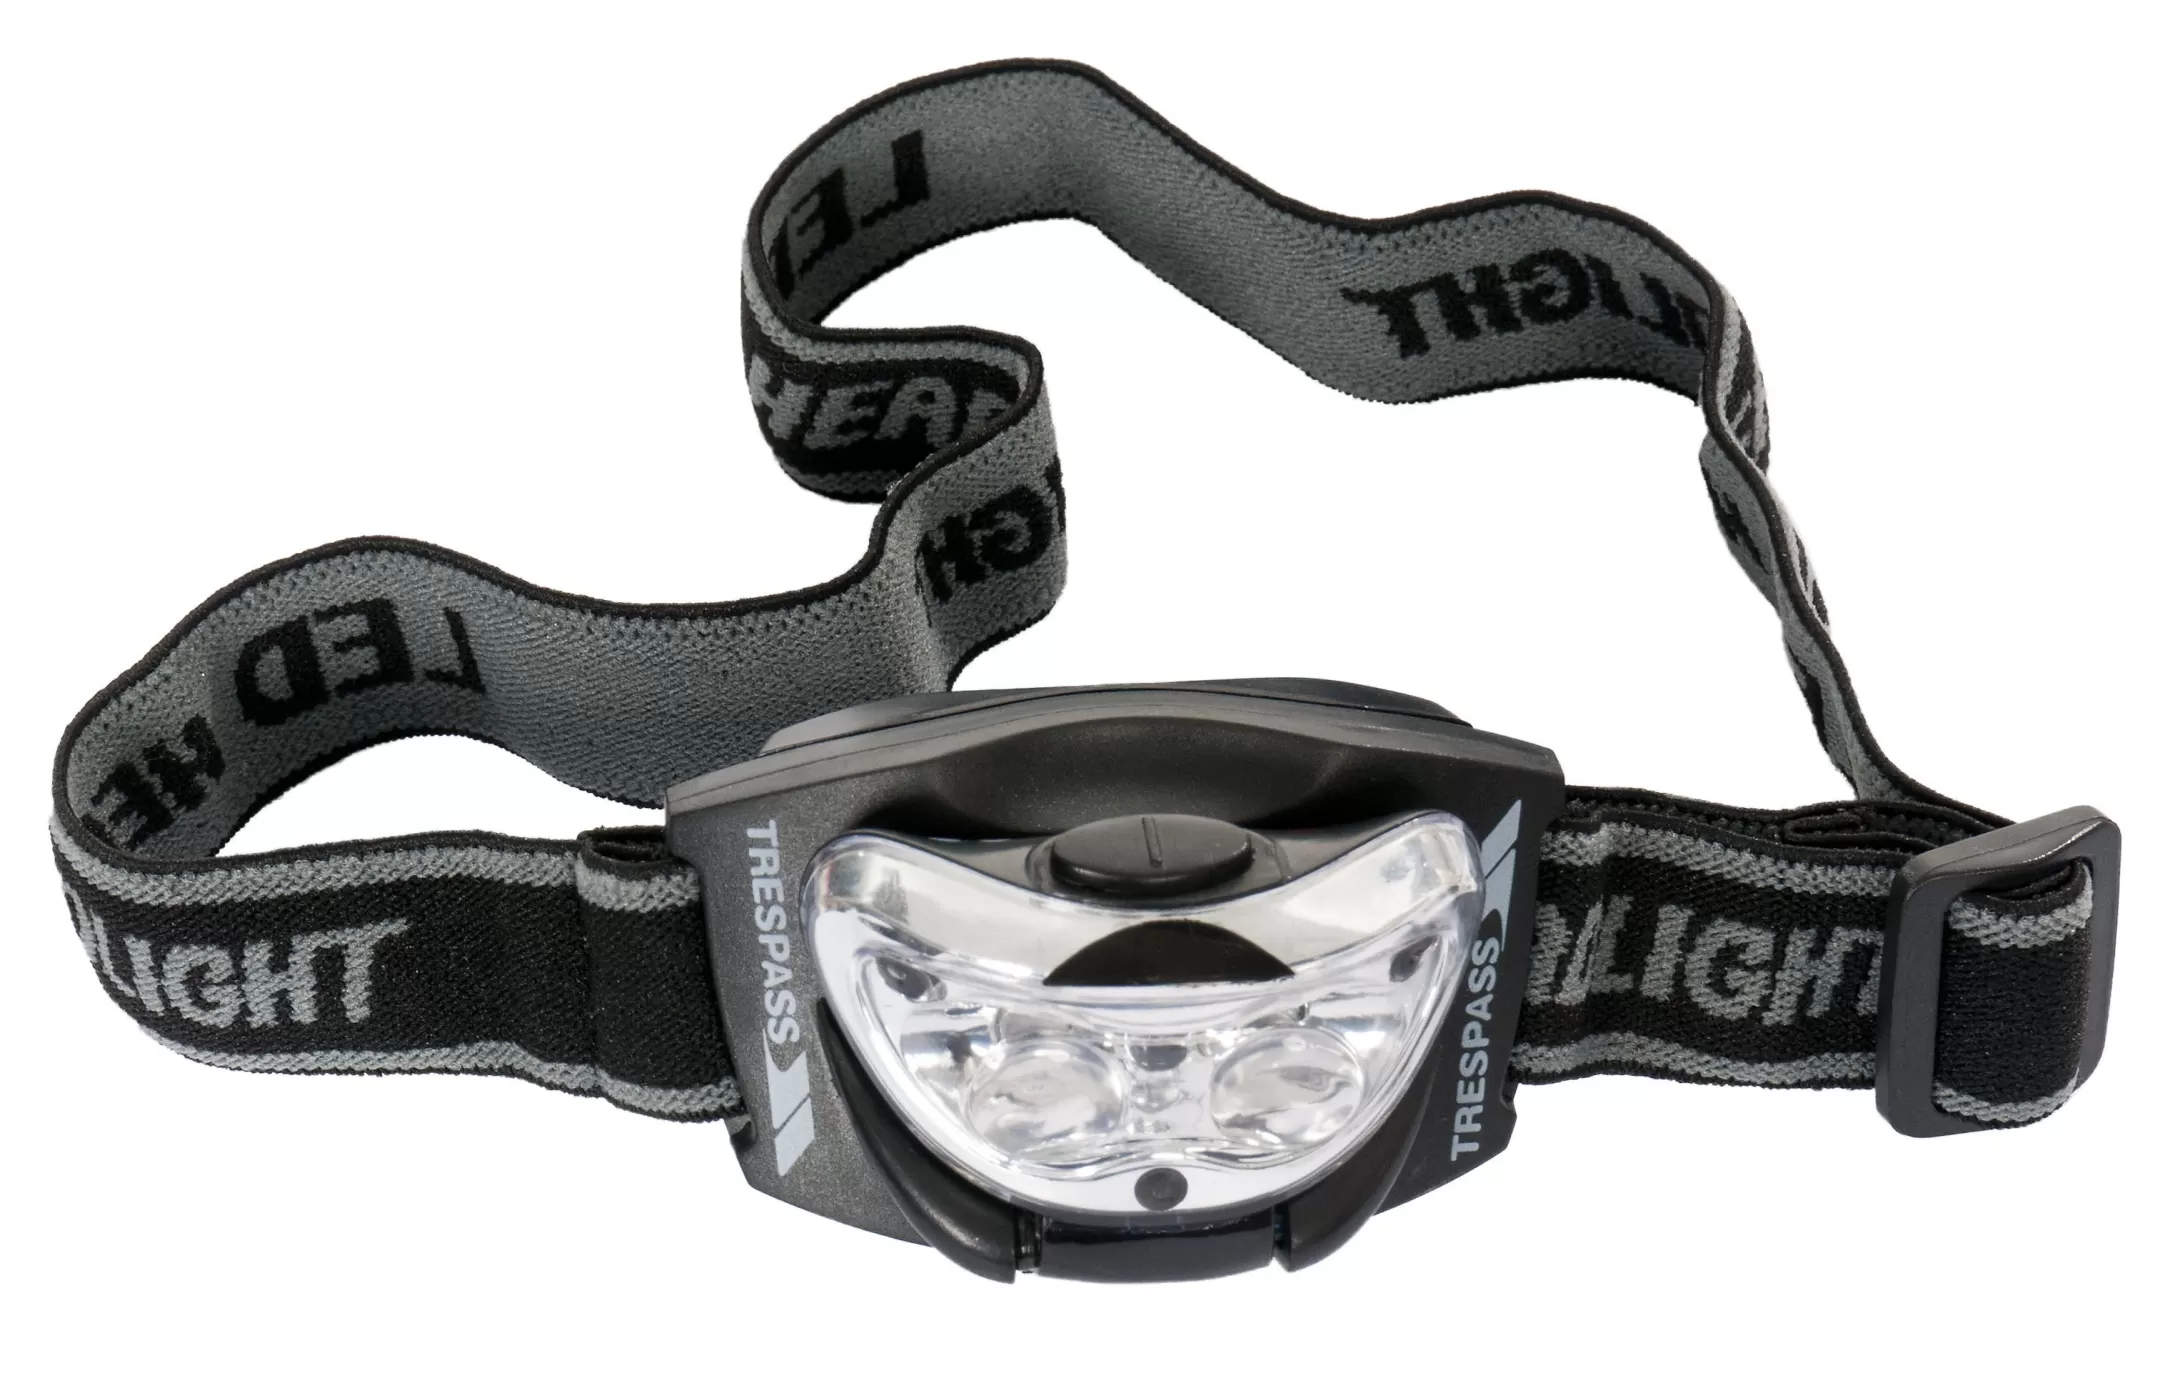 3 LED Head Torch | Trespass Best